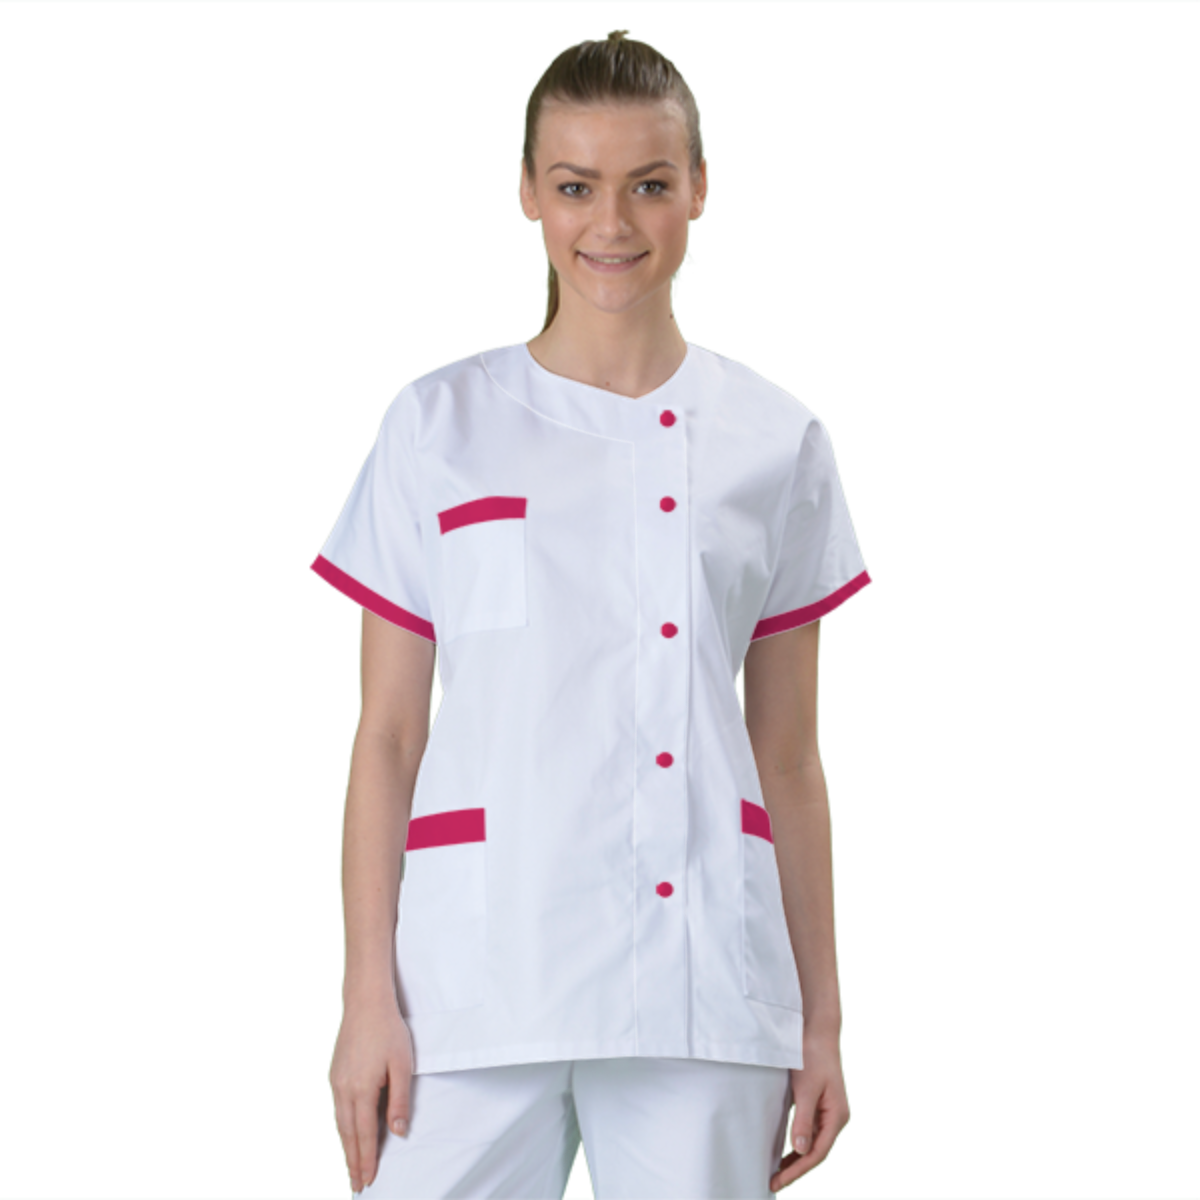 blouse-medicale-col-carre-a-personnaliser acheté - par Beatrice - le 06-03-2017